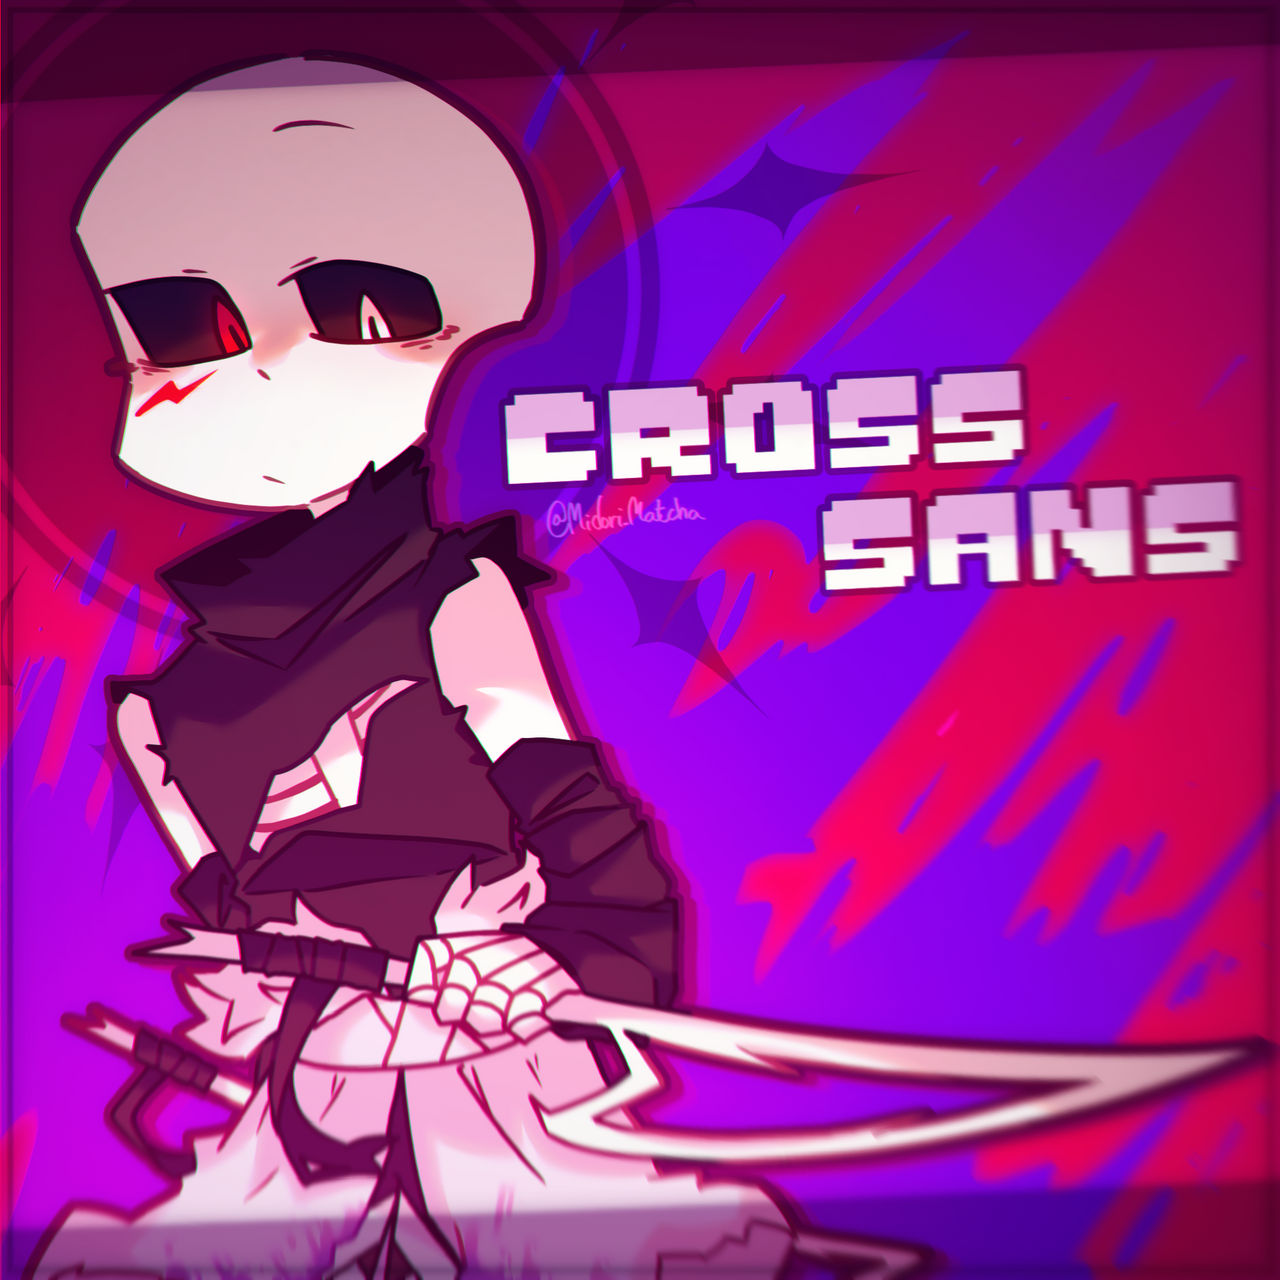 CROSS / XTALE!SANS by JakeiArtwork on DeviantArt